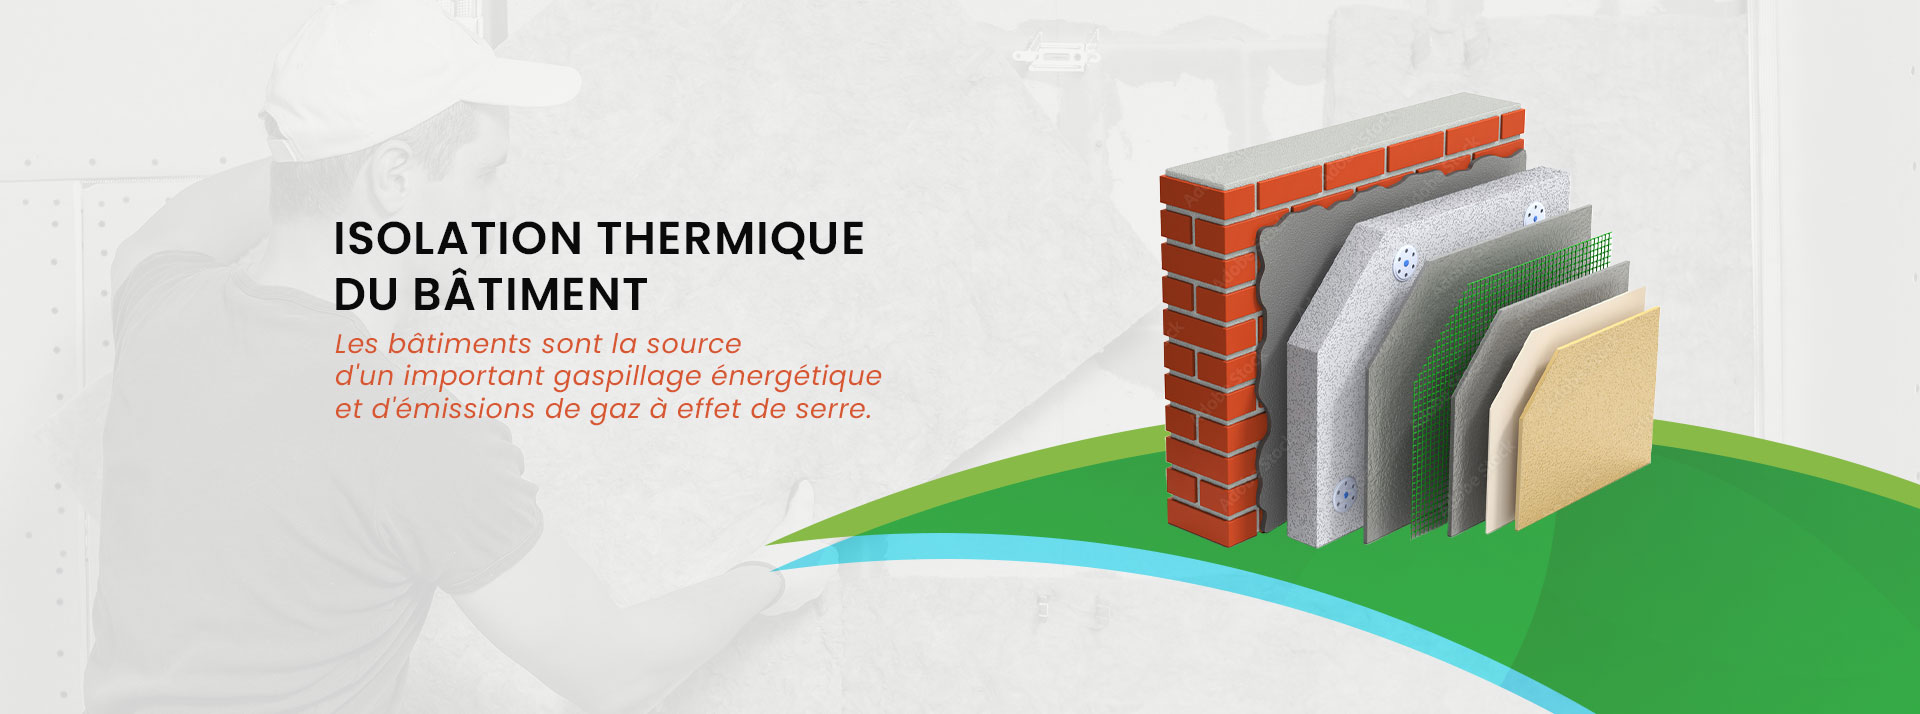 Isolation thermique près de Nantes - BE GREEN Energy